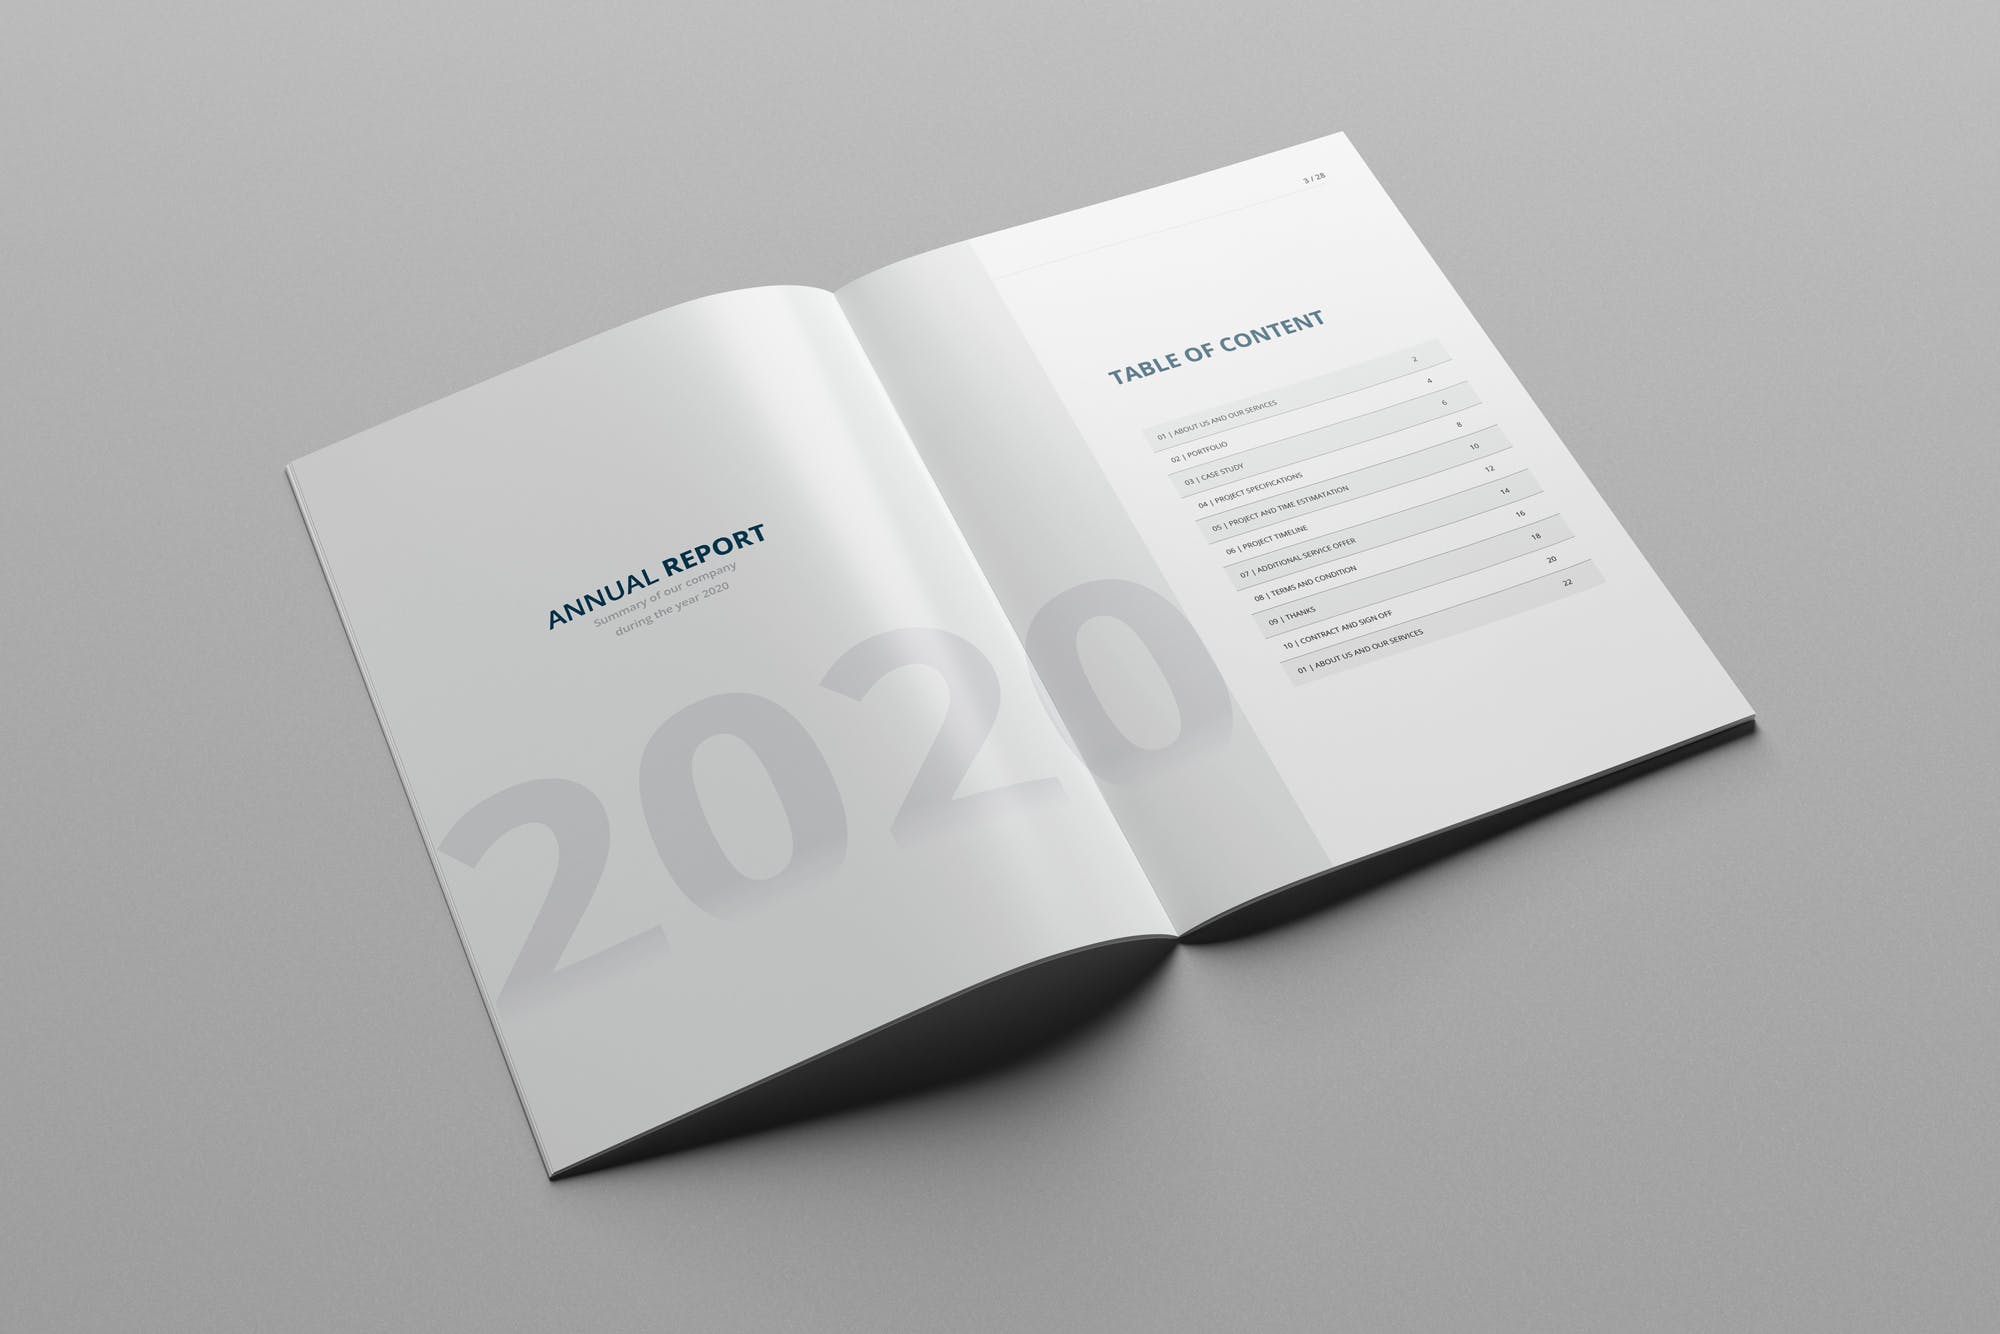 2020年企业年终总结报告设计INDD模板 Annual Report 2020 | 28 Pages插图(1)